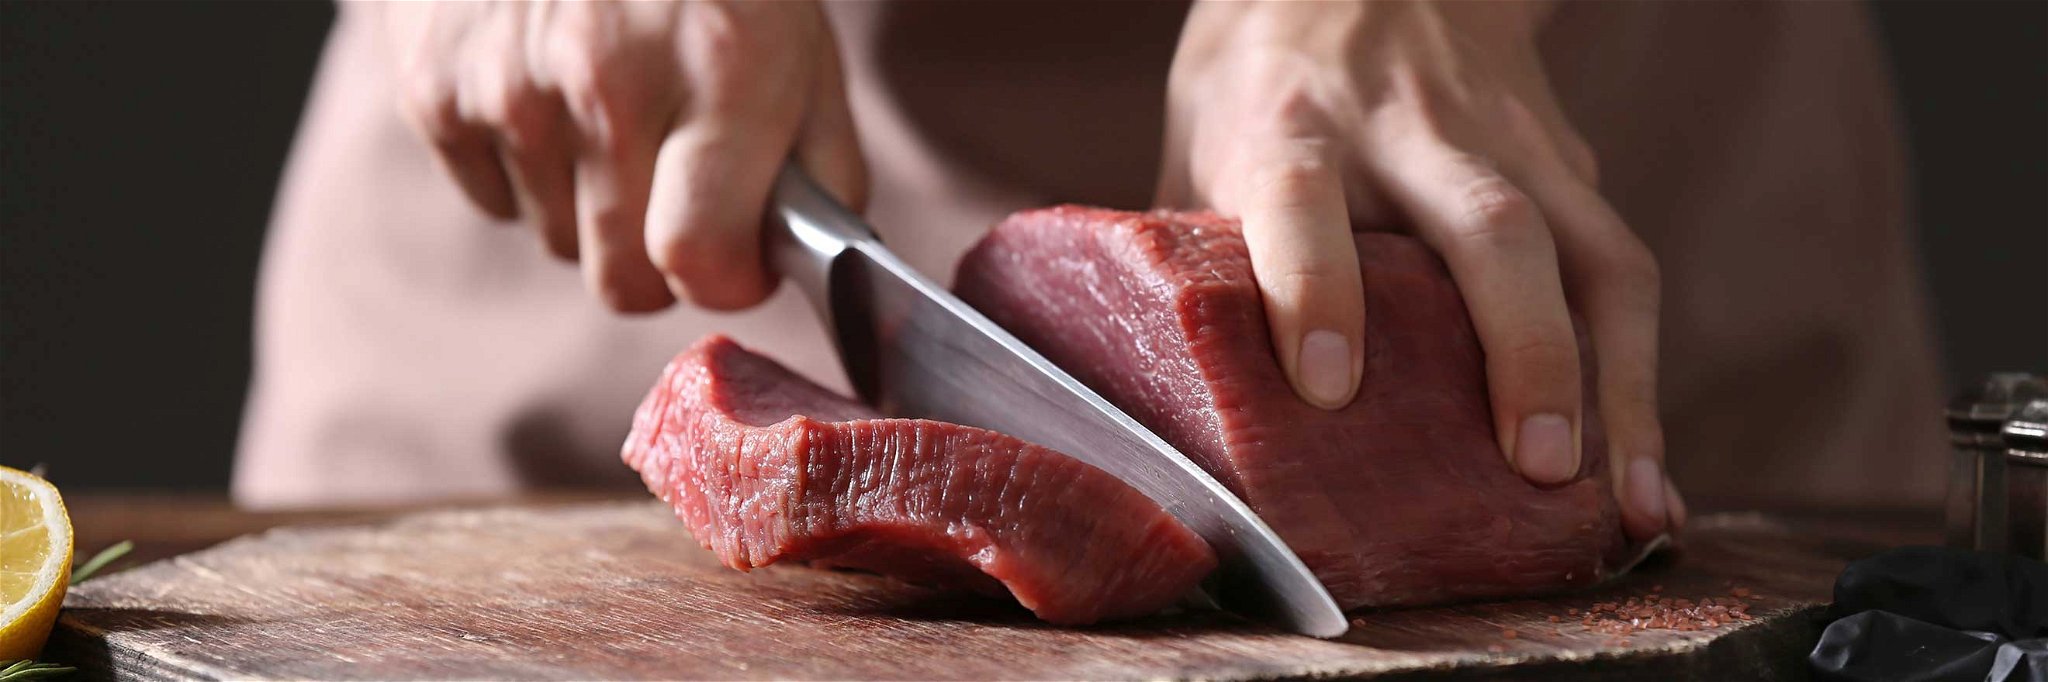 In Australien wird weltweit pro Kopf das meiste Fleisch konsumiert.